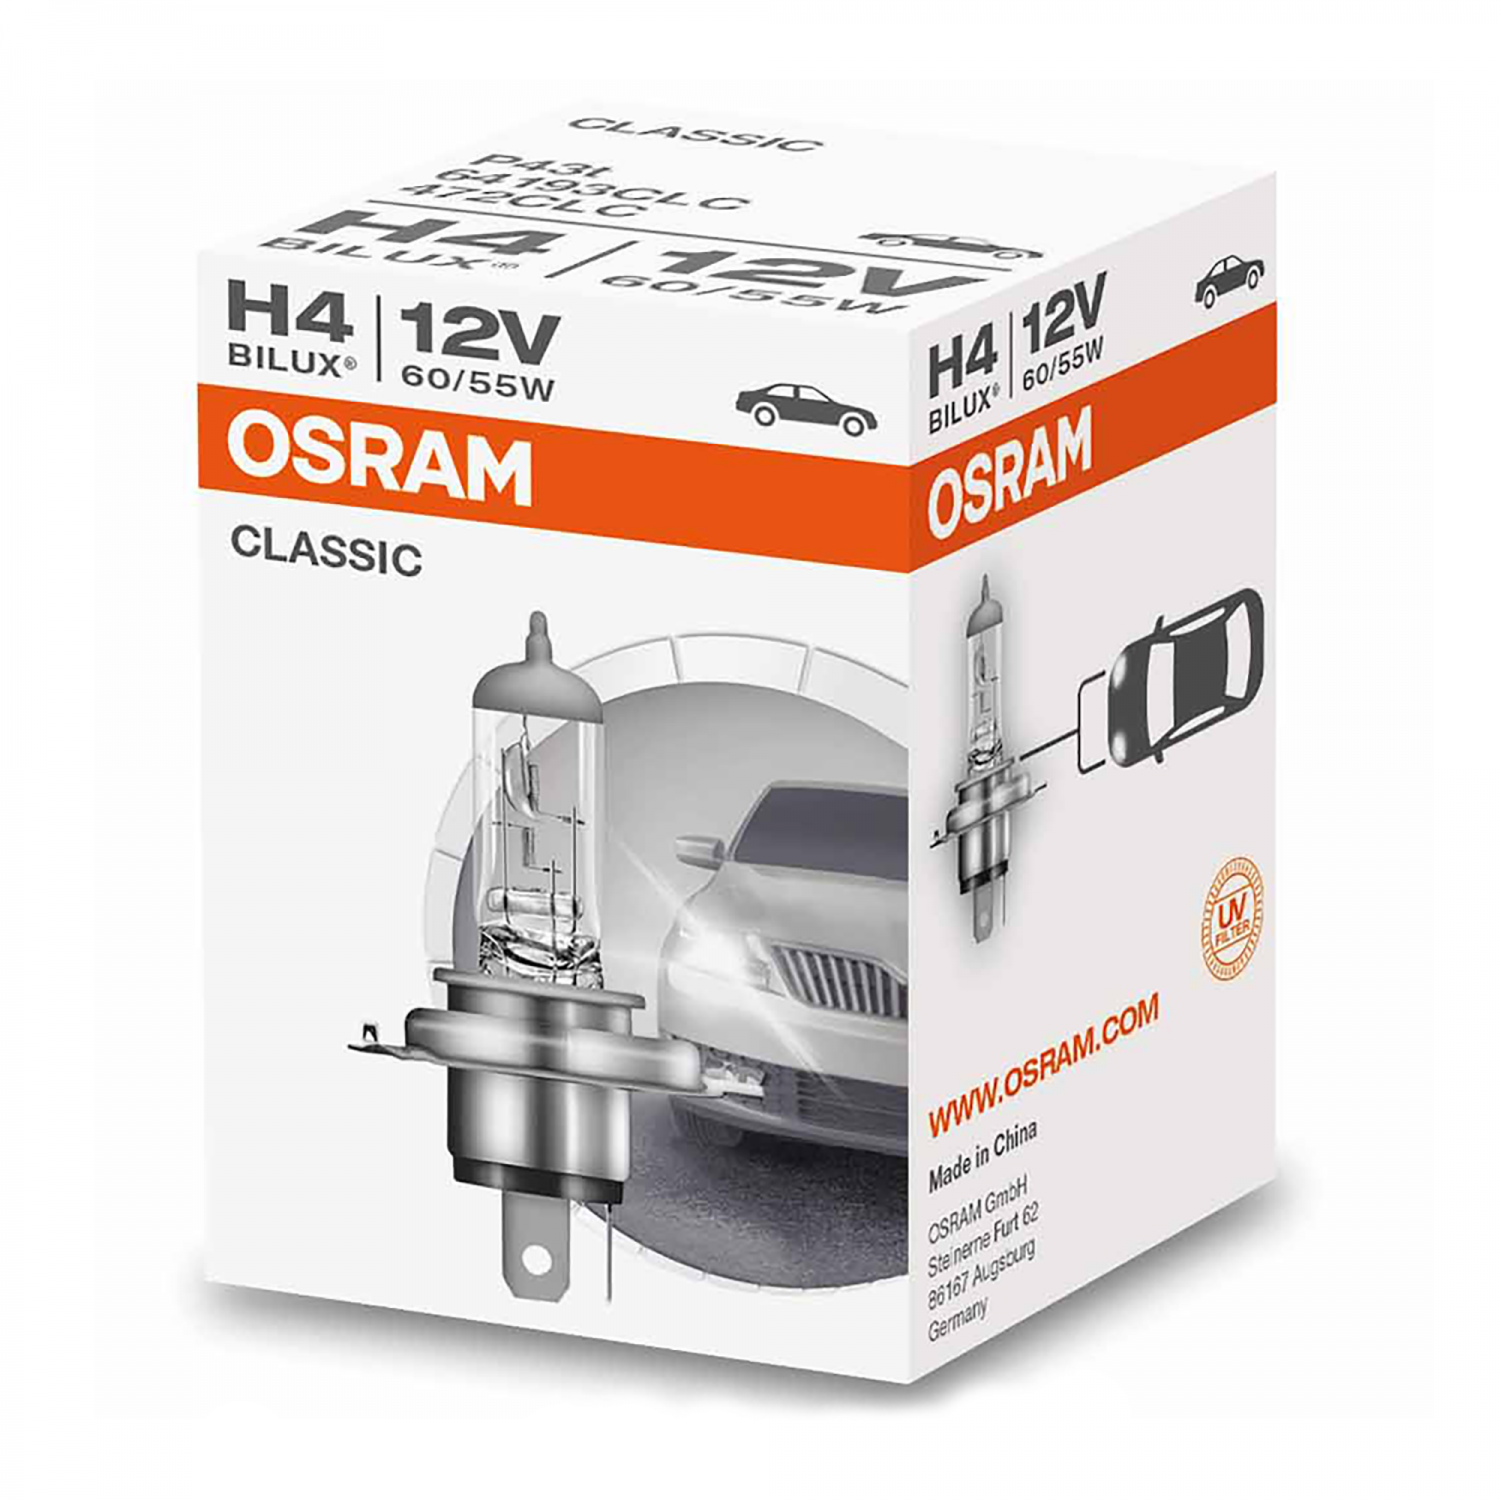 H4 Original Line 60/55W 12V Osram